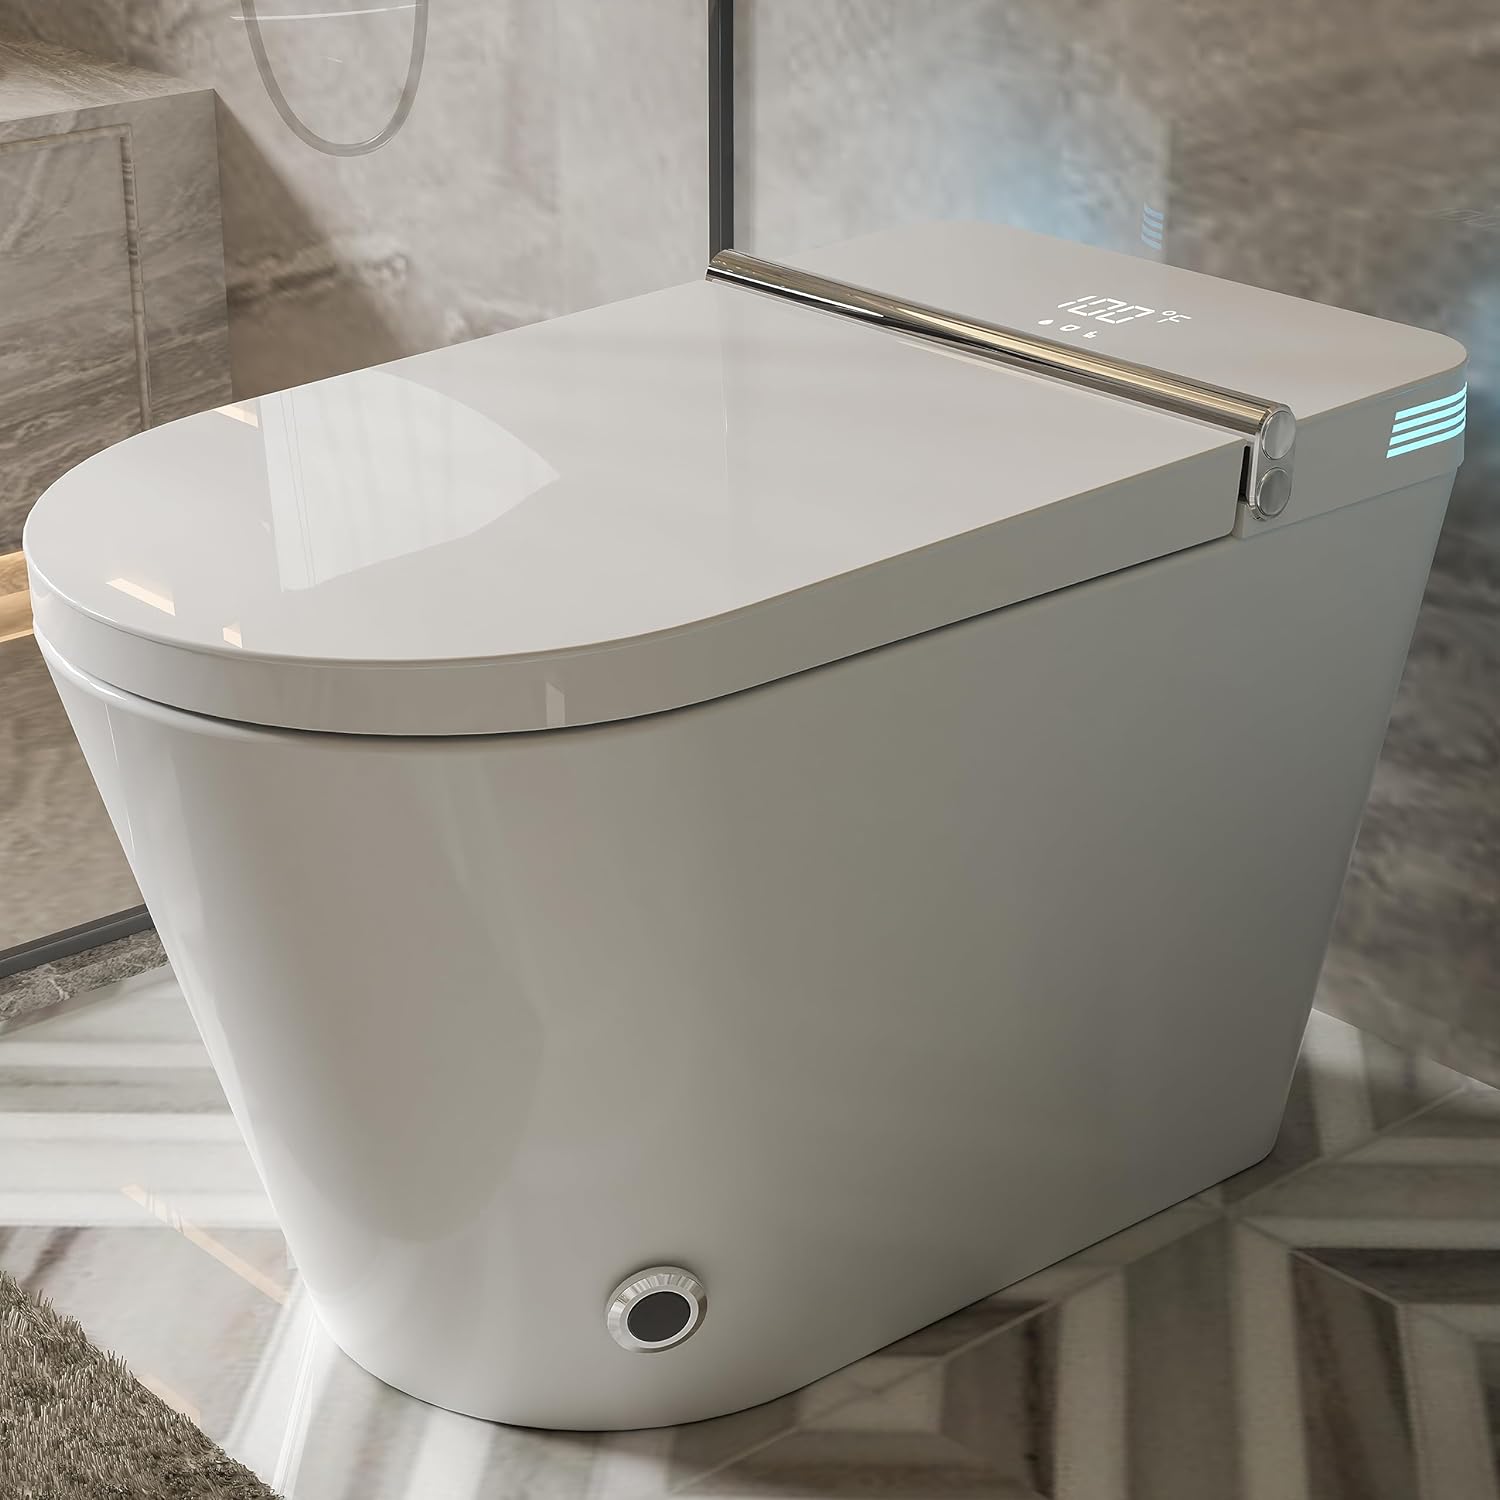 Best Toilet with Bidet - Top 5 Picks for Ultimate Bathroom Luxury